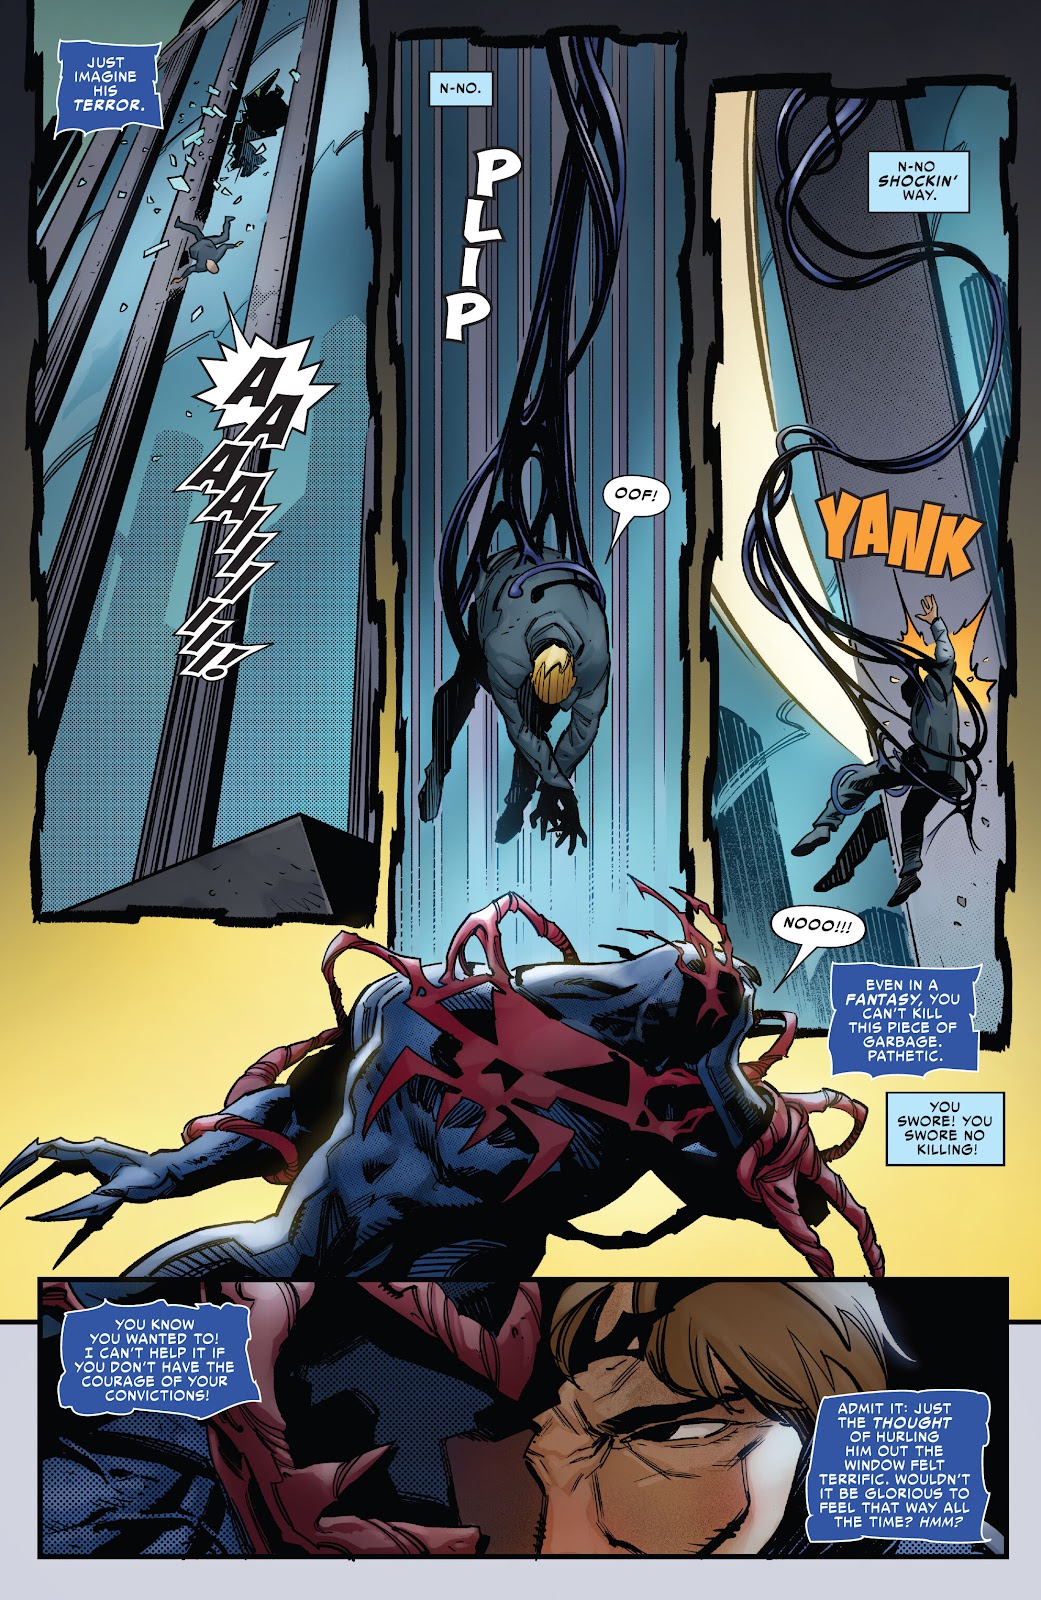 Symbiote Spider-Man 2099 issue 2 - Page 22